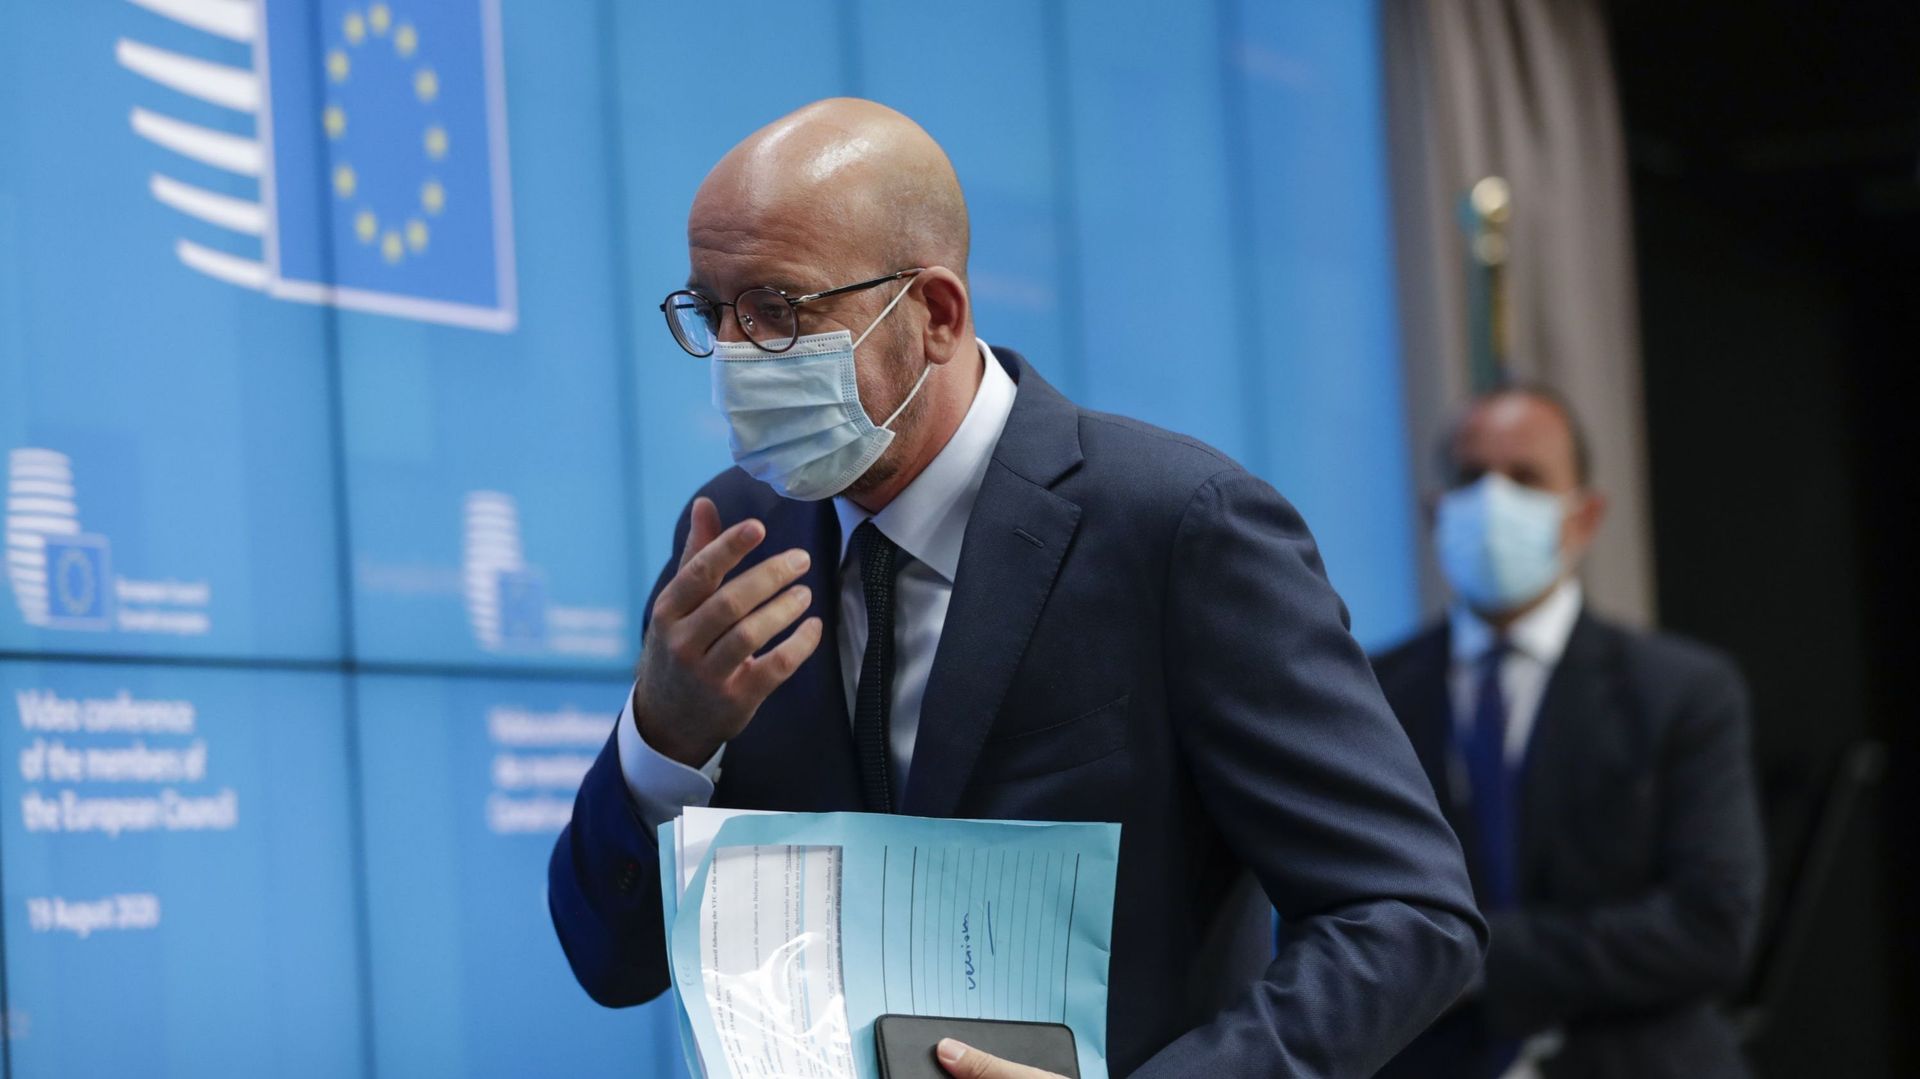 Coronavirus : Charles Michel en quarantaine, le sommet européen reporté d’une semaine